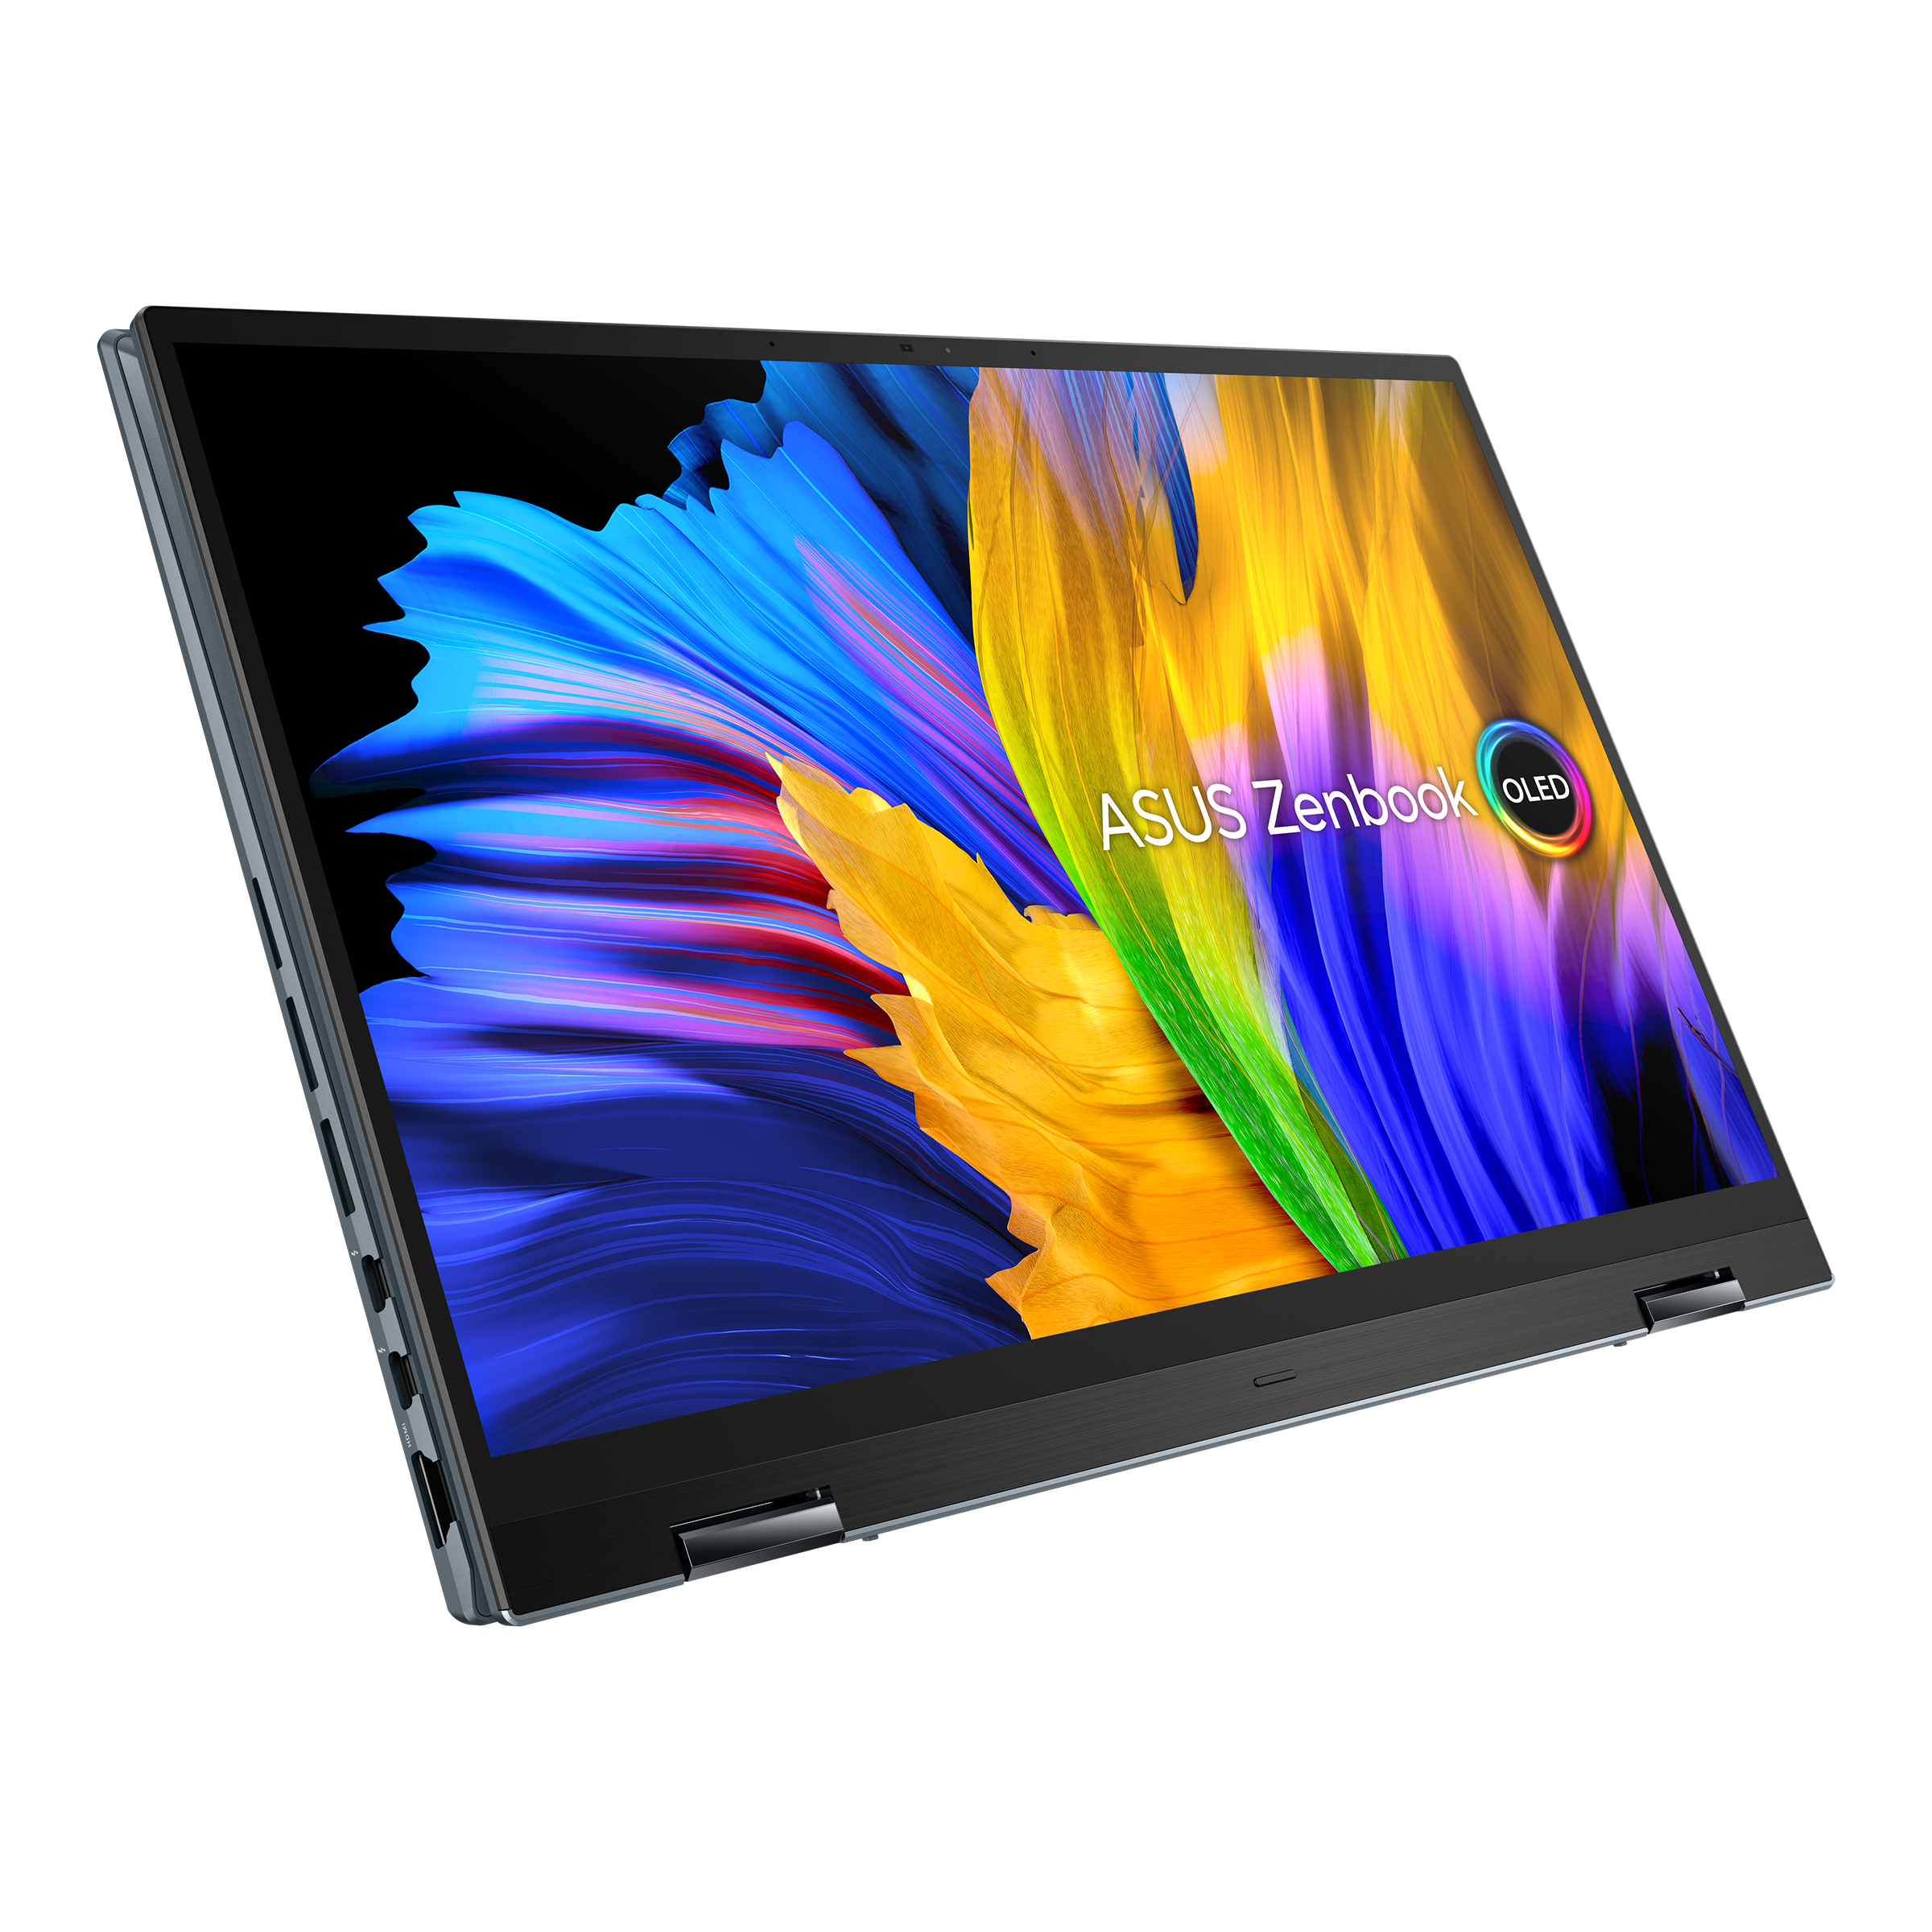 Zenbook 14 Flip OLED (UP5401, 12th Gen Intel)｜Laptops For Home｜ASUS Global